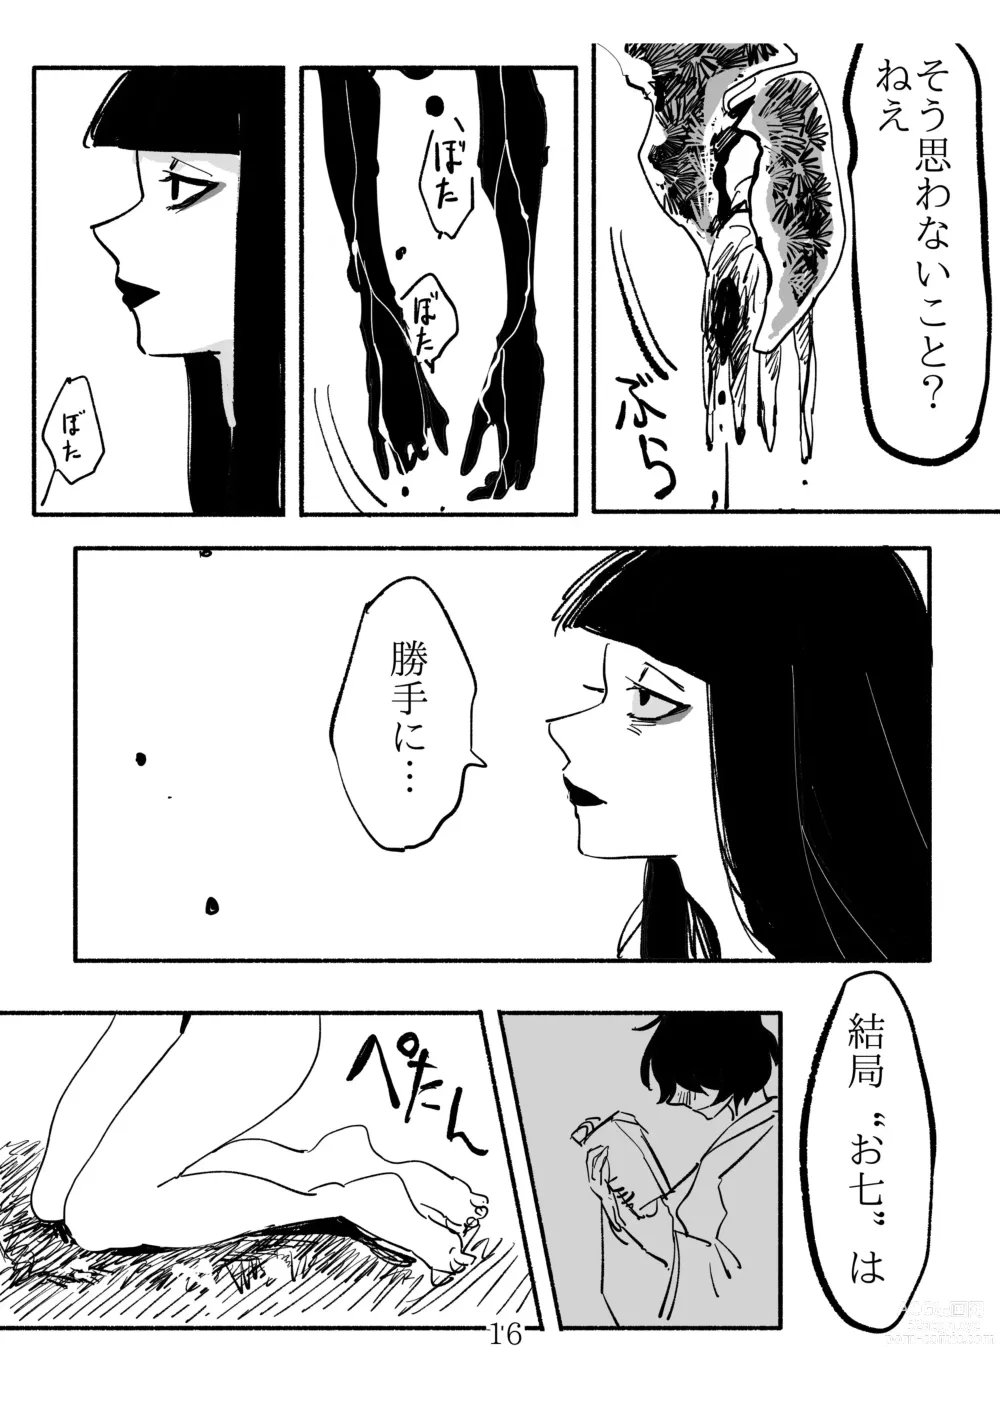 Page 16 of doujinshi Shoujo ni Koi Shita